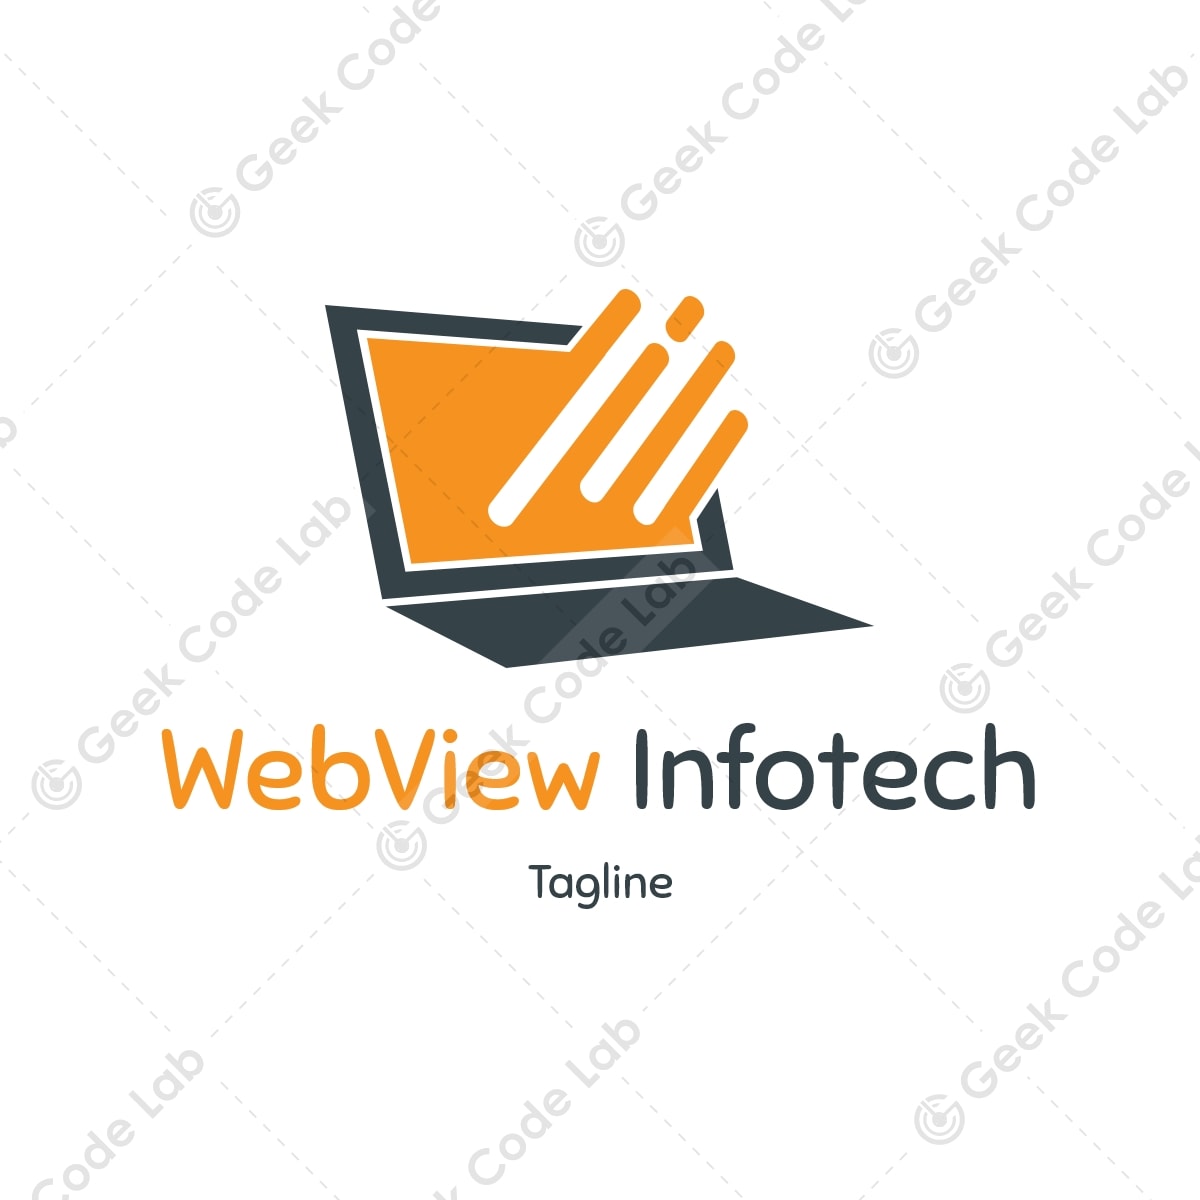 Webview infotech